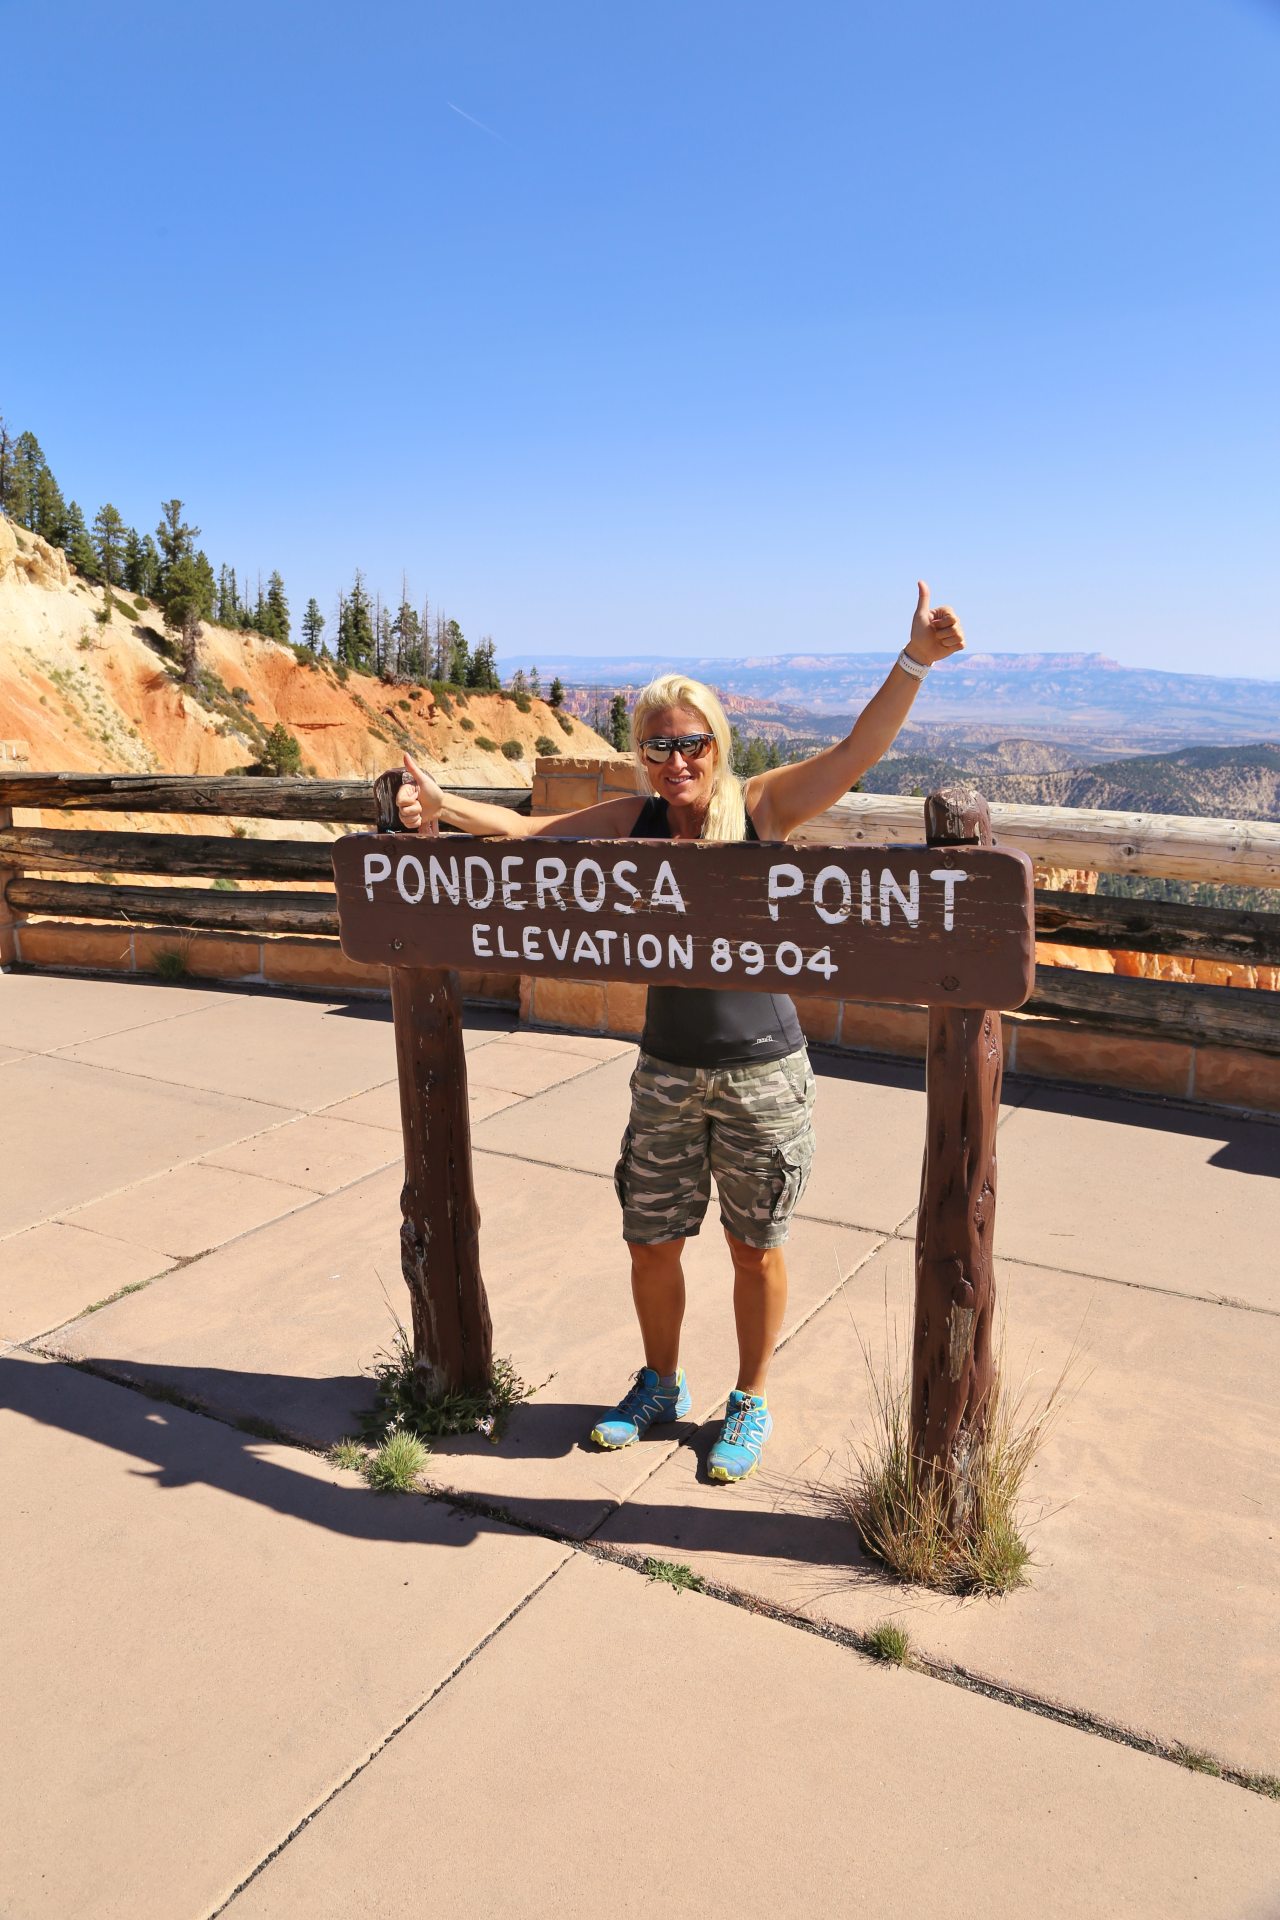 Auf über 2.700 Meter wird die Luft schon dünn .. - Beschilderung, Blondine, Bryce Canyon National Park, Himmel, Personen, Ponderosa Point, Portrait, Porträt, Schild, Tafel, Utah - HOFBAUER-HOFMANN Sofia - (Bryce Canyon, Bryce, Utah, Vereinigte Staaten)